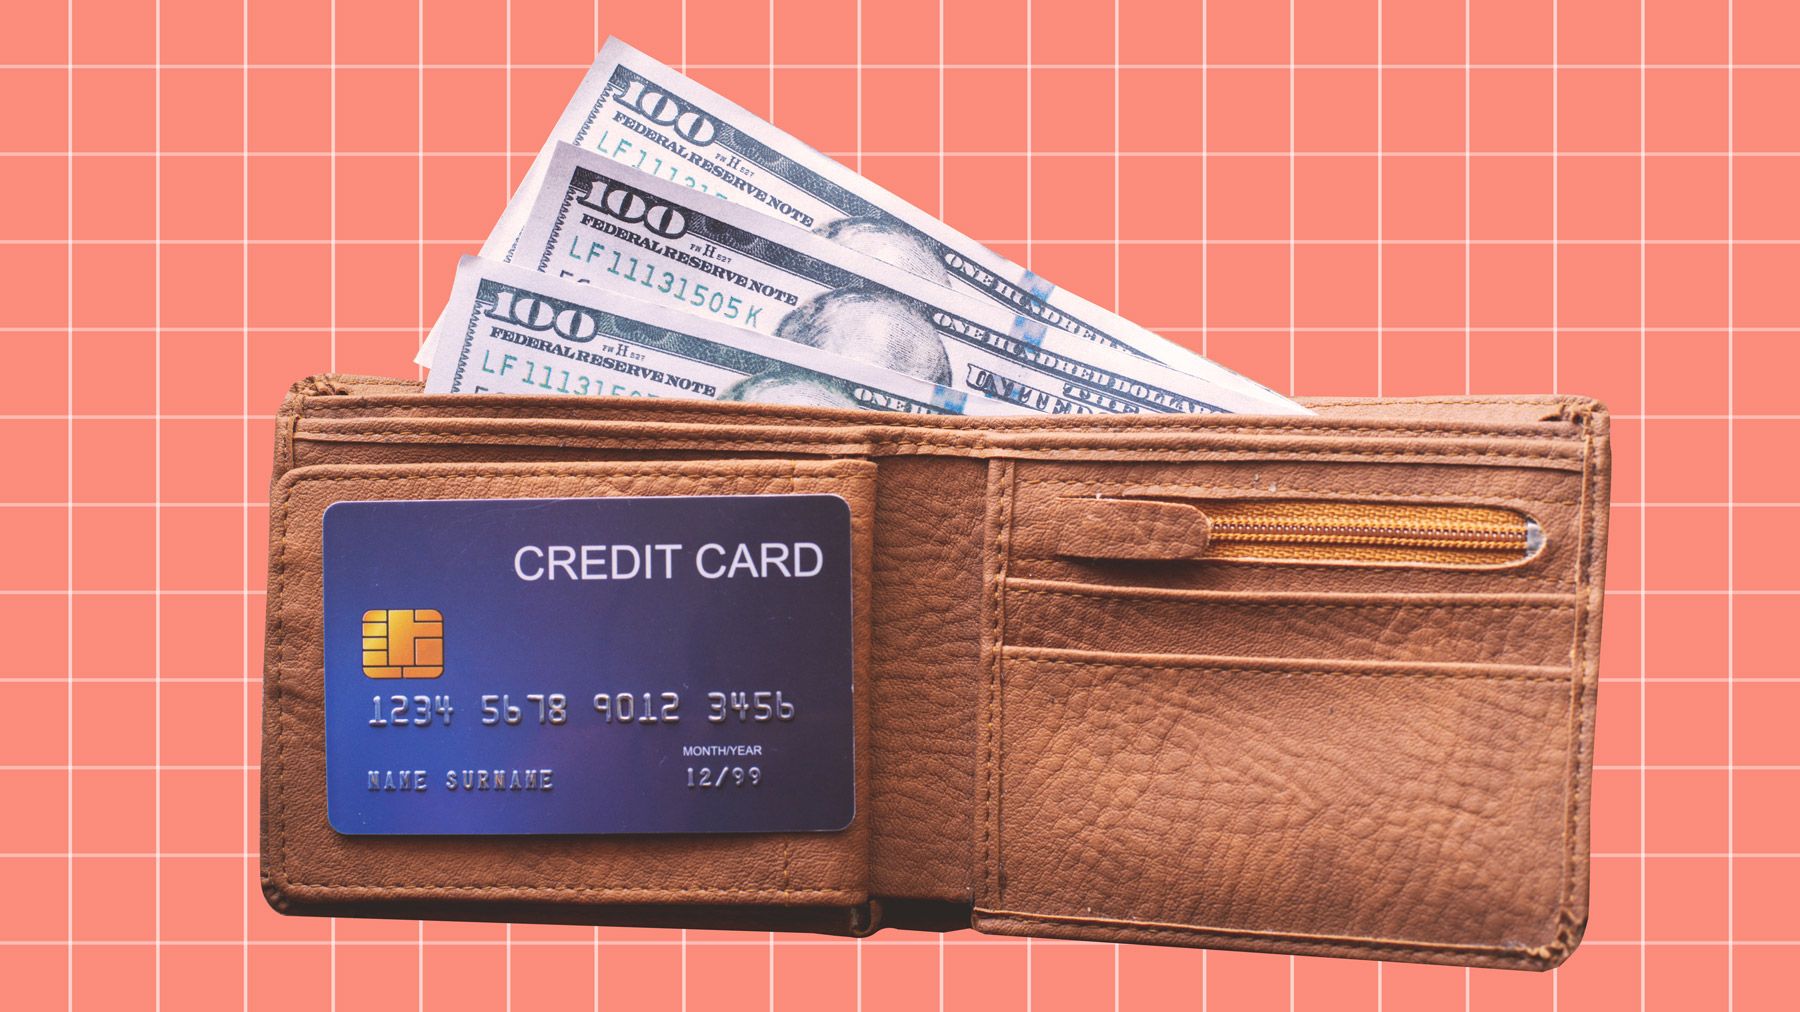 Får du en god værdi ud af dit belønningskreditkort? En ny undersøgelse siger, at mange mennesker ikke er